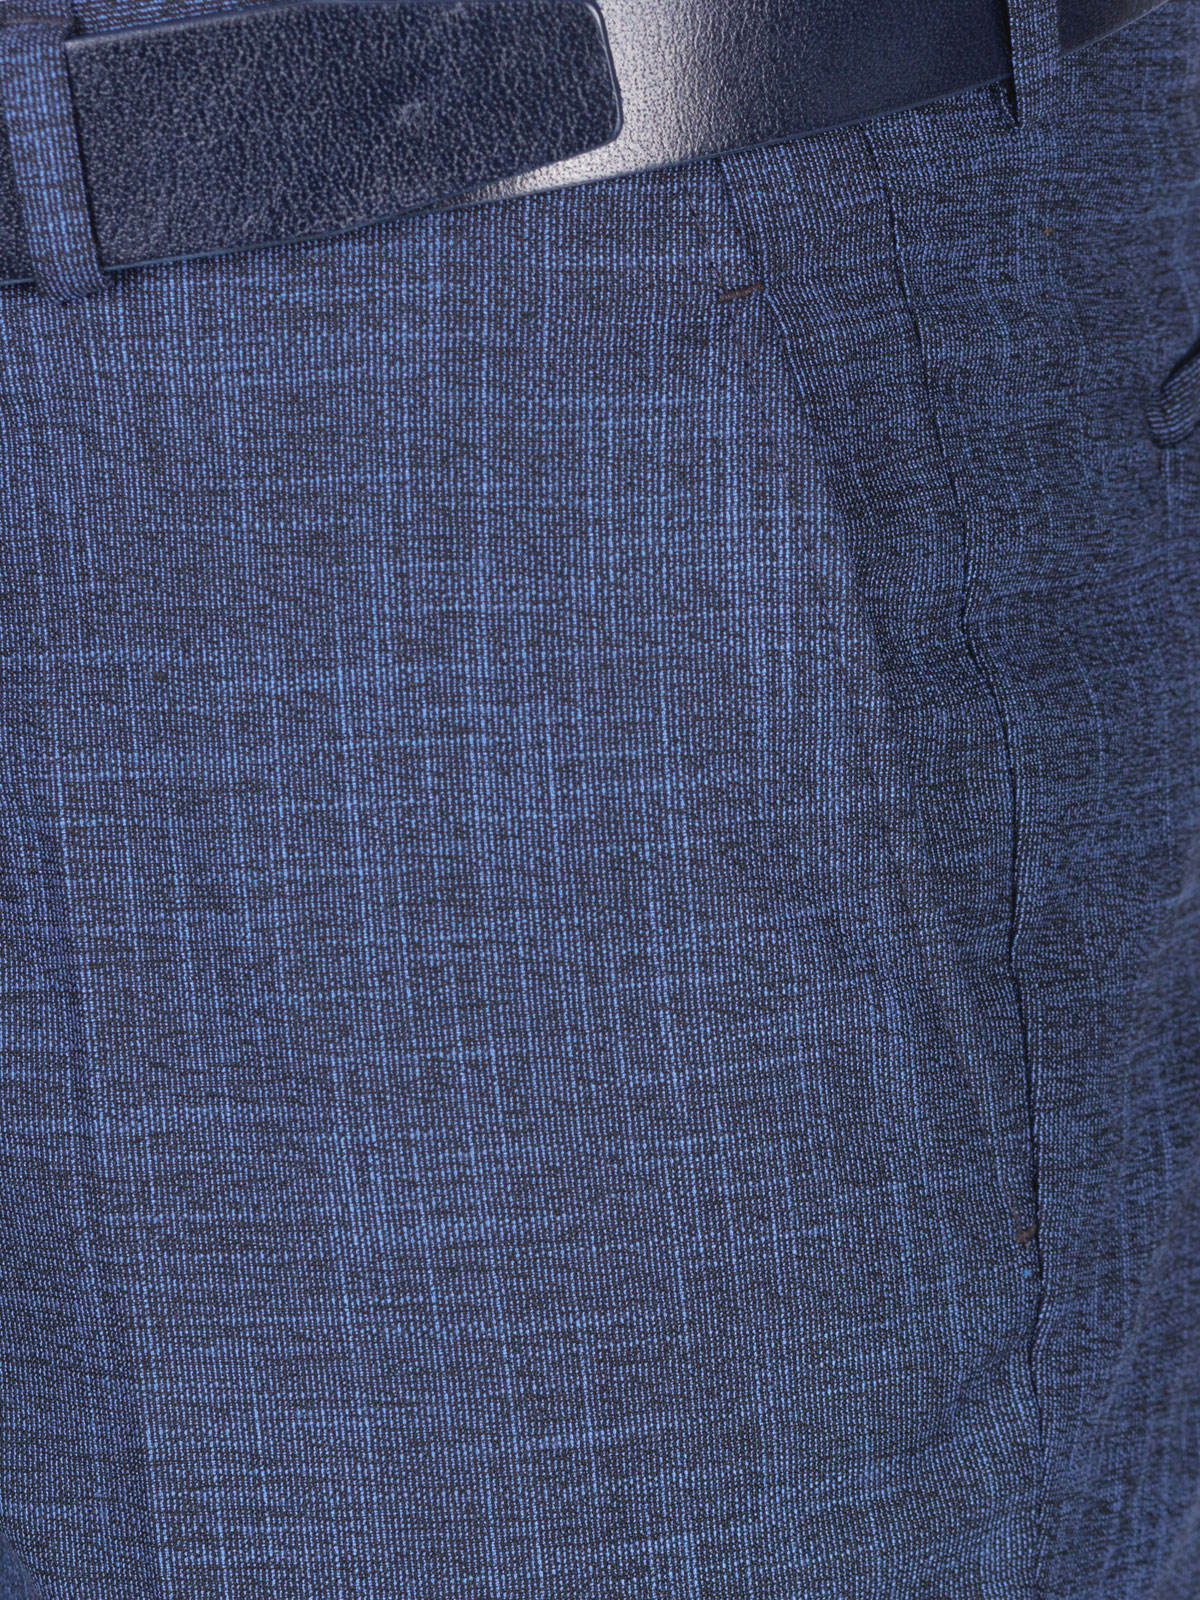 Официален мъжки панталон в синьо  каре - 63337 112.00 лв img2